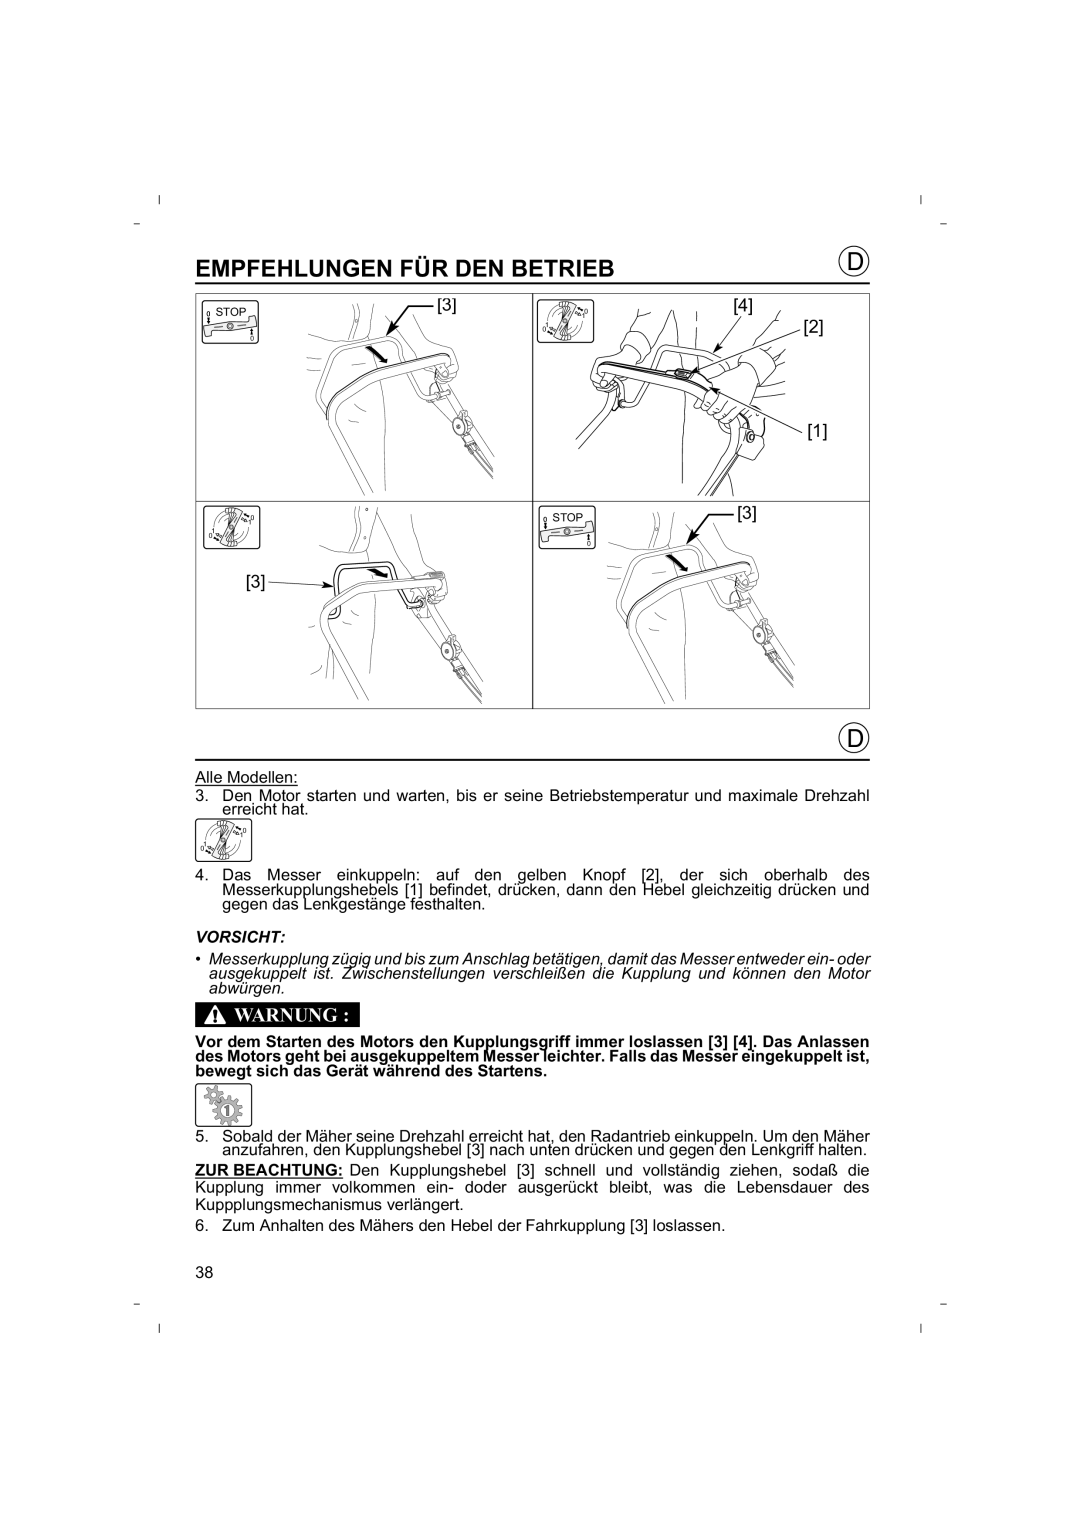 Honda Power Equipment HRB425C owner manual Empfehlungen Für Den Betrieb, Warnung 